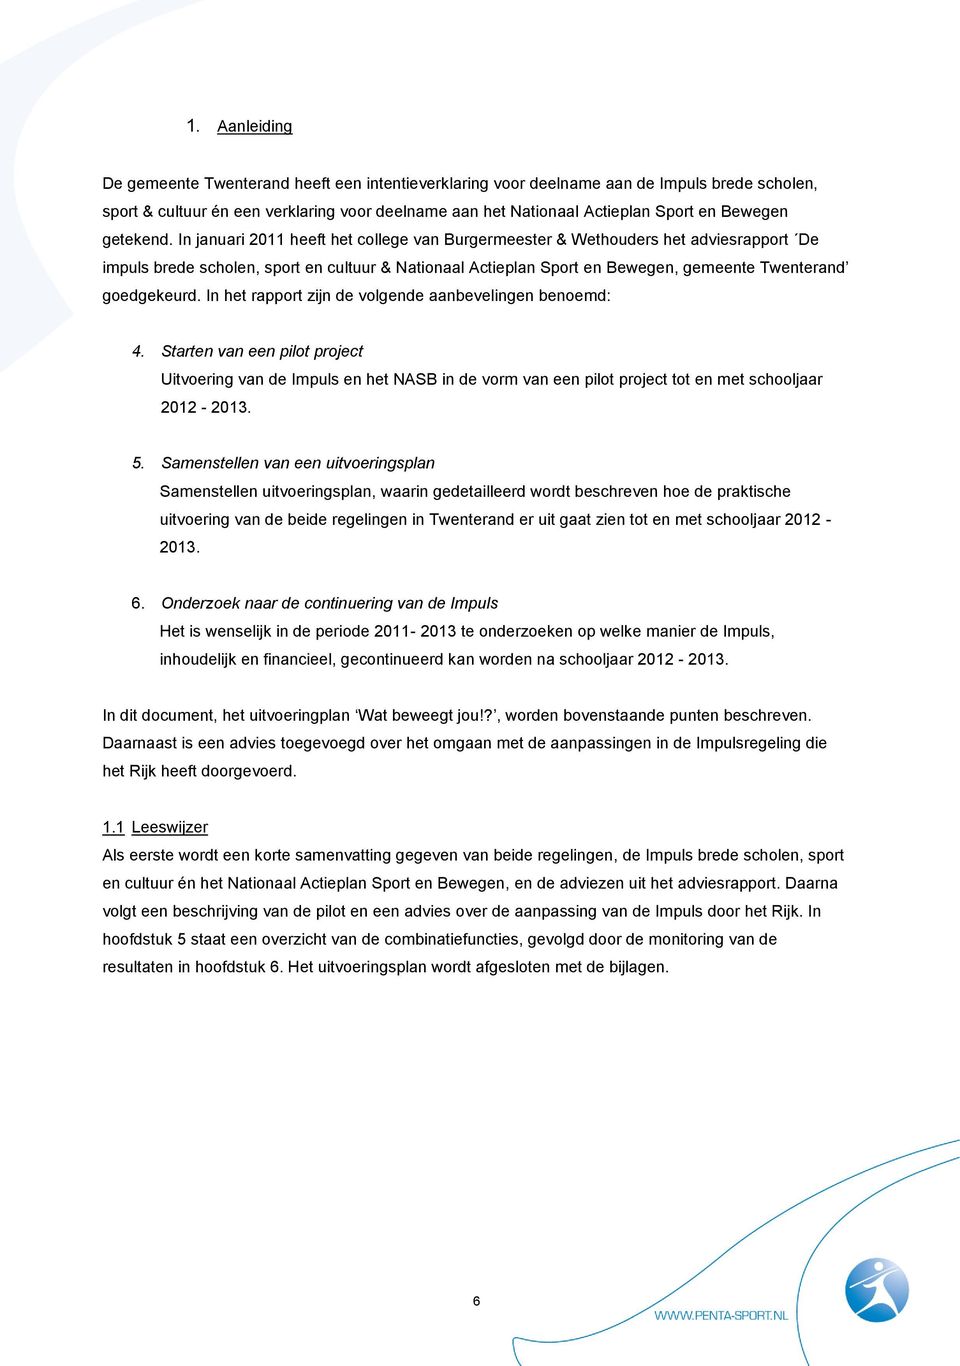 In januari 2011 heeft het college van Burgermeester & Wethouders het adviesrapport De impuls brede scholen, sport en cultuur & Nationaal Actieplan Sport en Bewegen, gemeente Twenterand goedgekeurd.